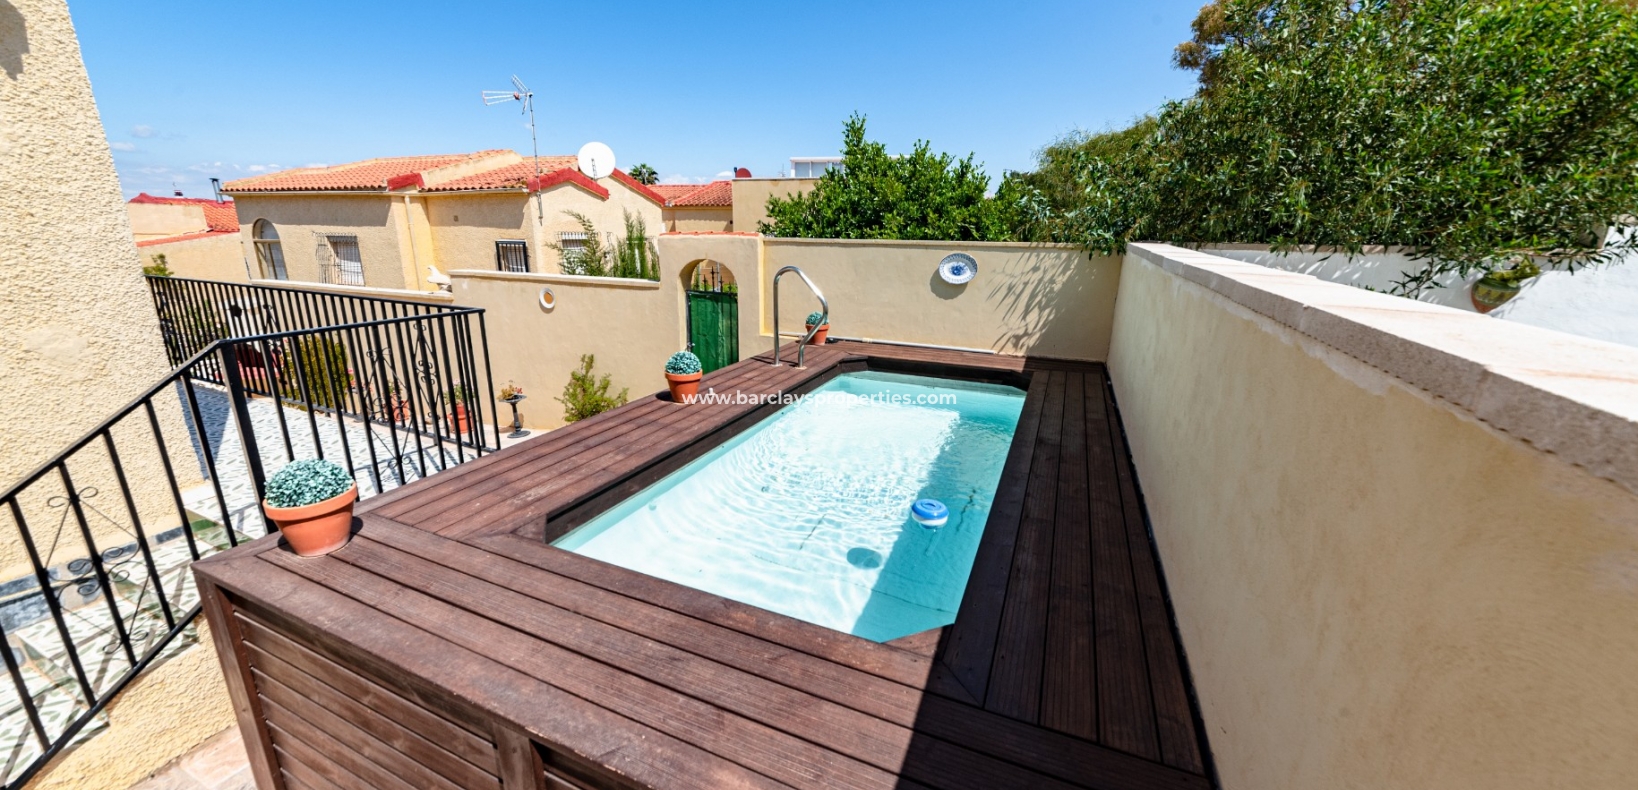 Private Pool - Villa For Sale In Urb. La Marina, With Private Pool